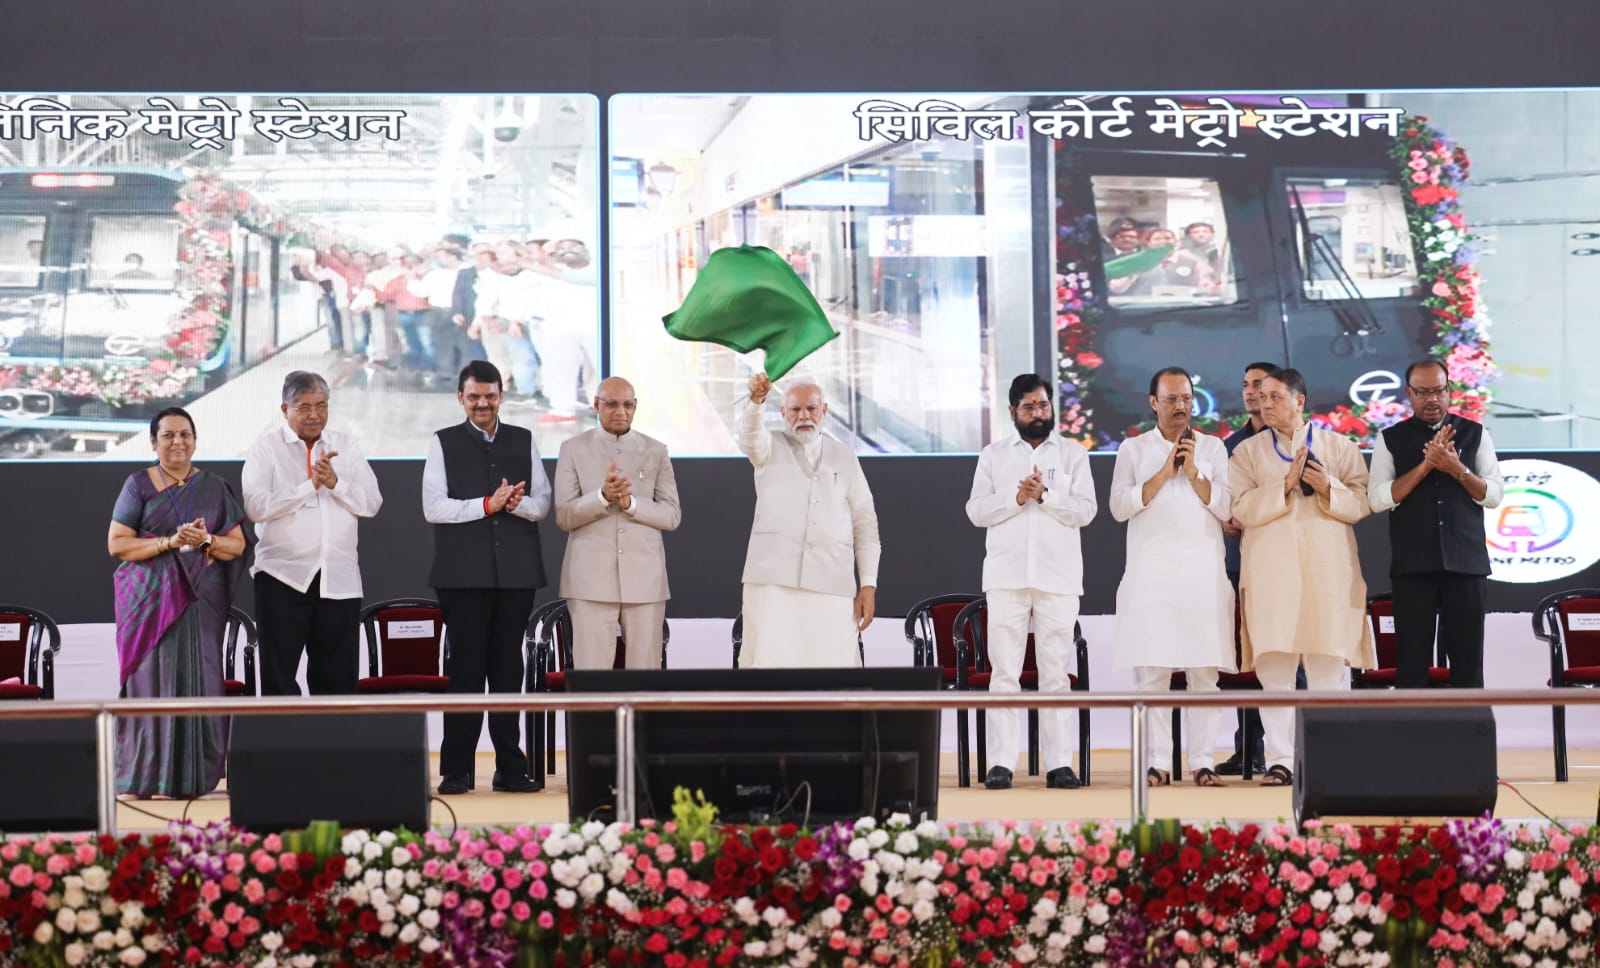 PM Modi in Pune News | प्रधानमंत्री नरेंद्र मोदी यांच्याहस्ते पुणे मेट्रोच्या मार्गिकांसह विविध प्रकल्पांचे लोकार्पण आणि भूमिपूजन